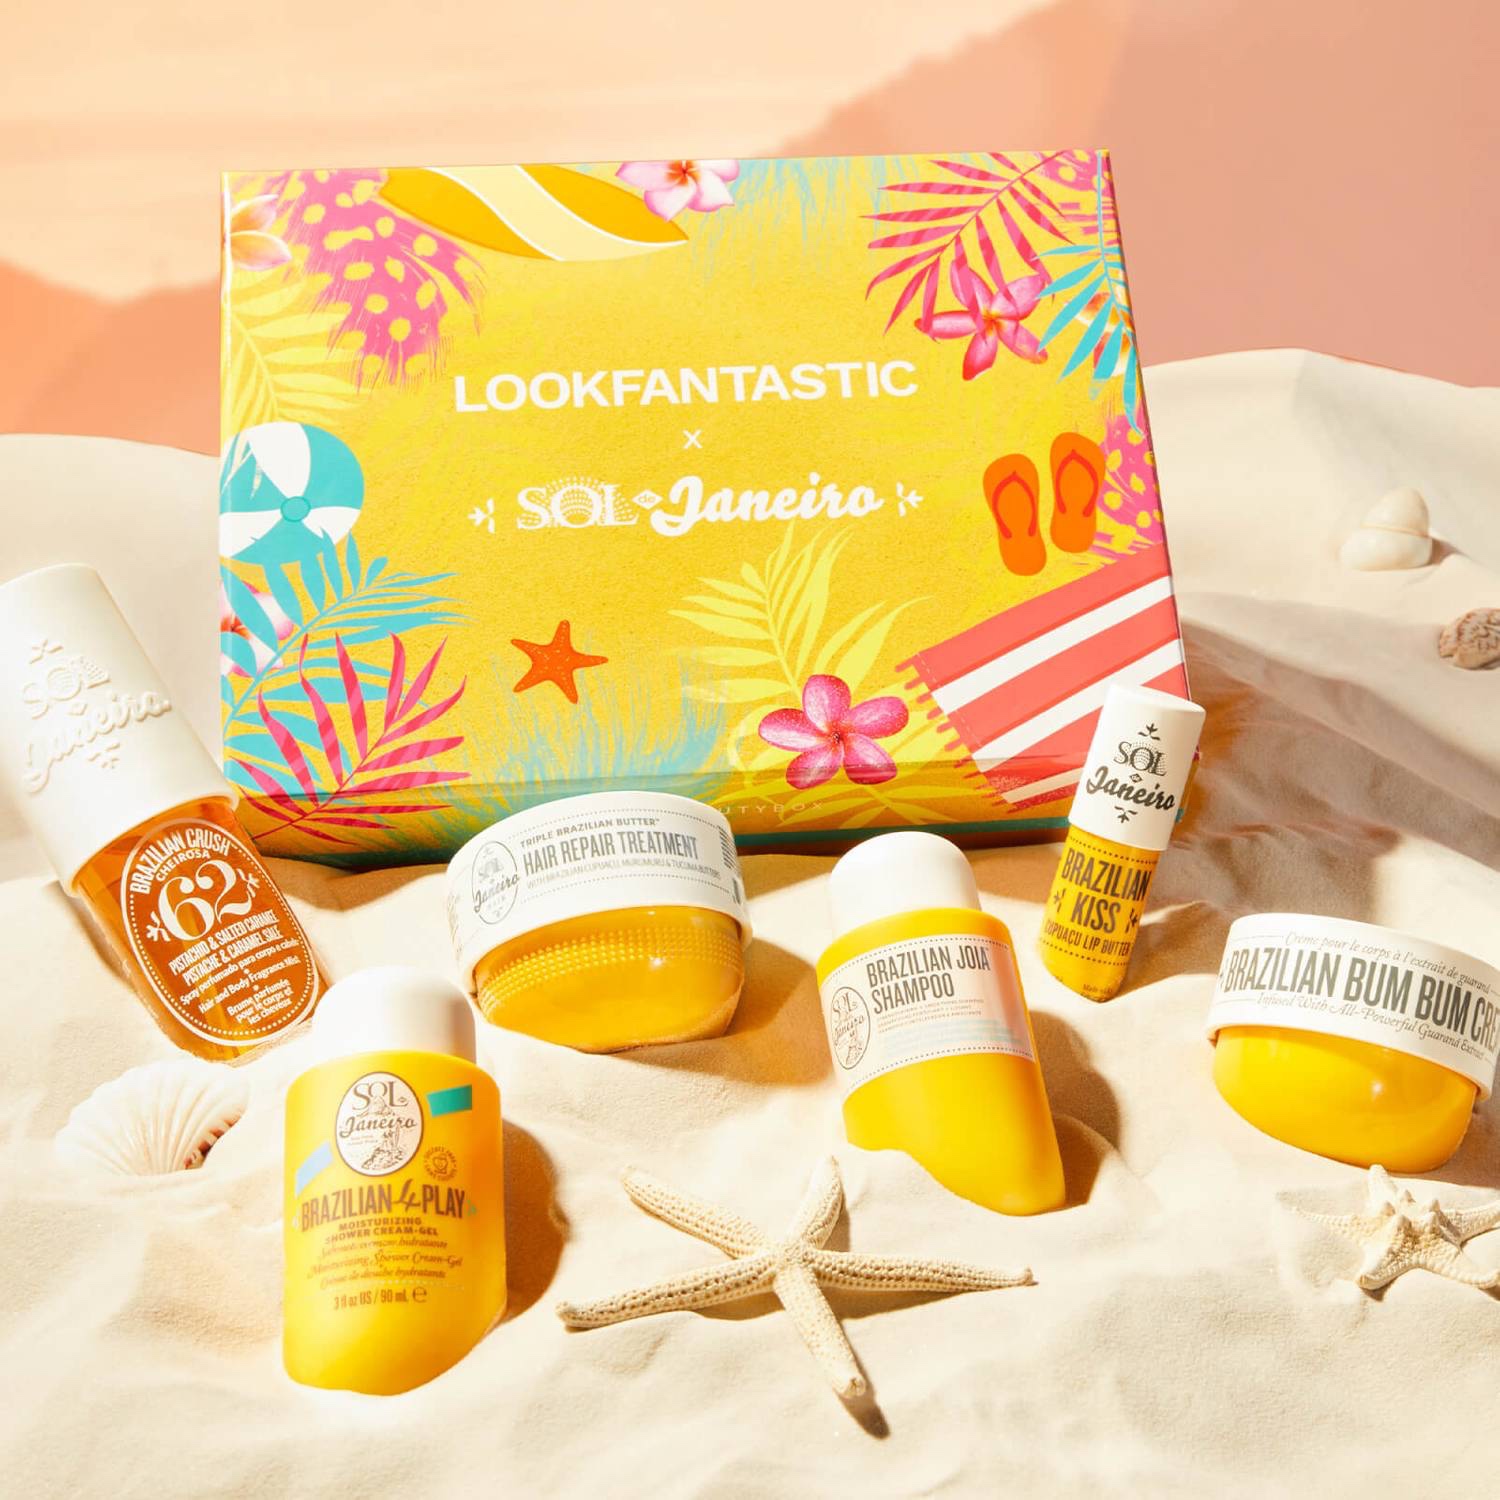 LookFantastic x Sol de Janeiro Limited Edition Box - Contents